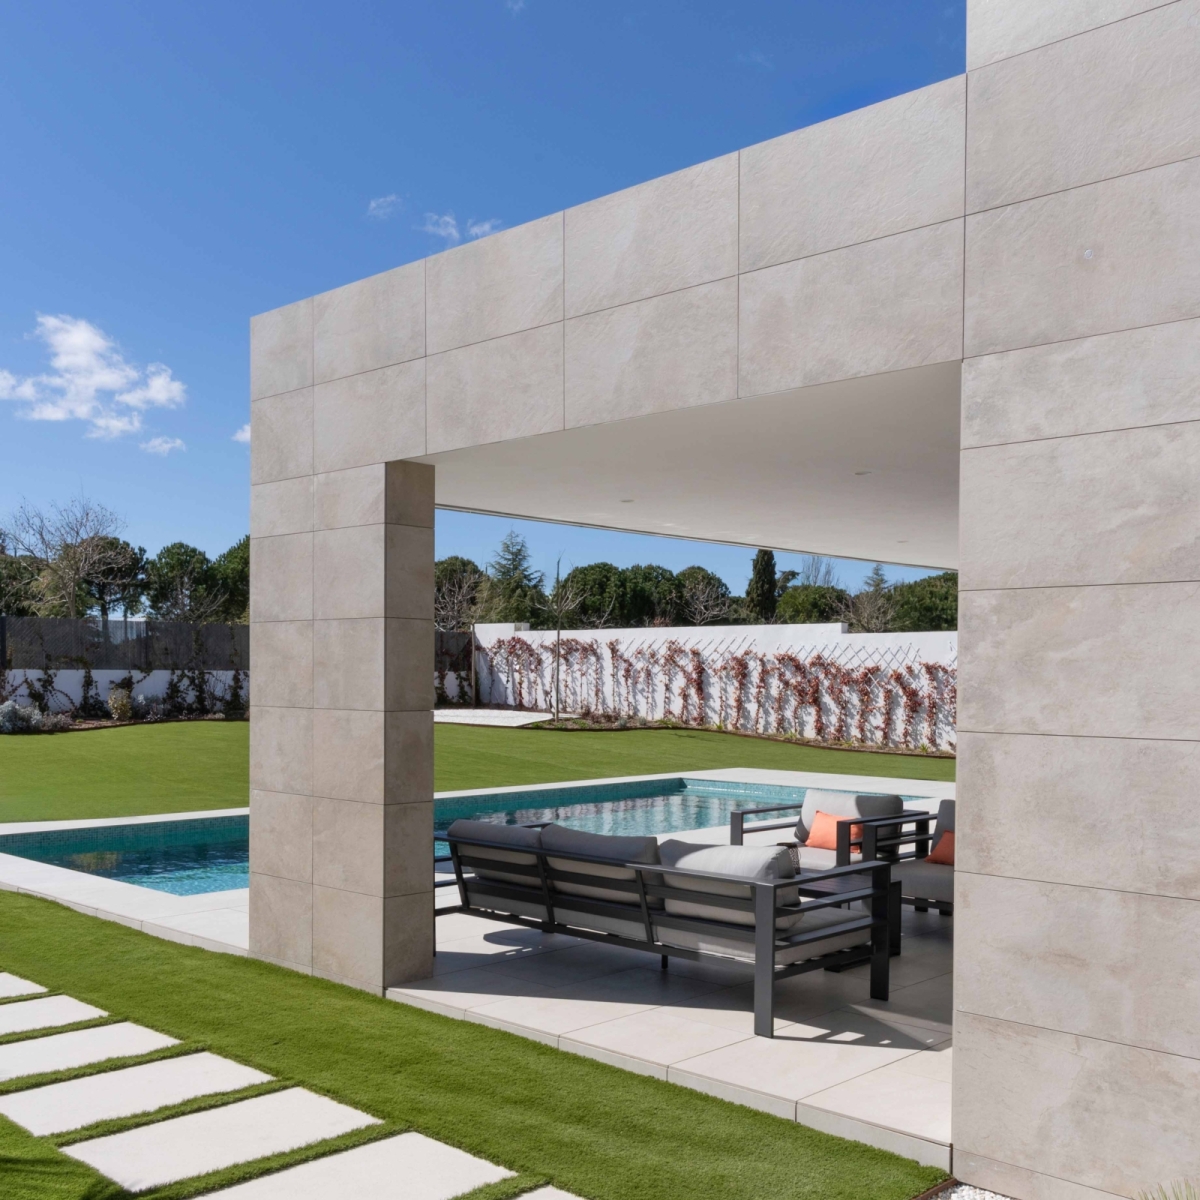 Jardín y piscina de casa prefabricada de gama alta en Majadahonda, Madrid. Vista lateral.